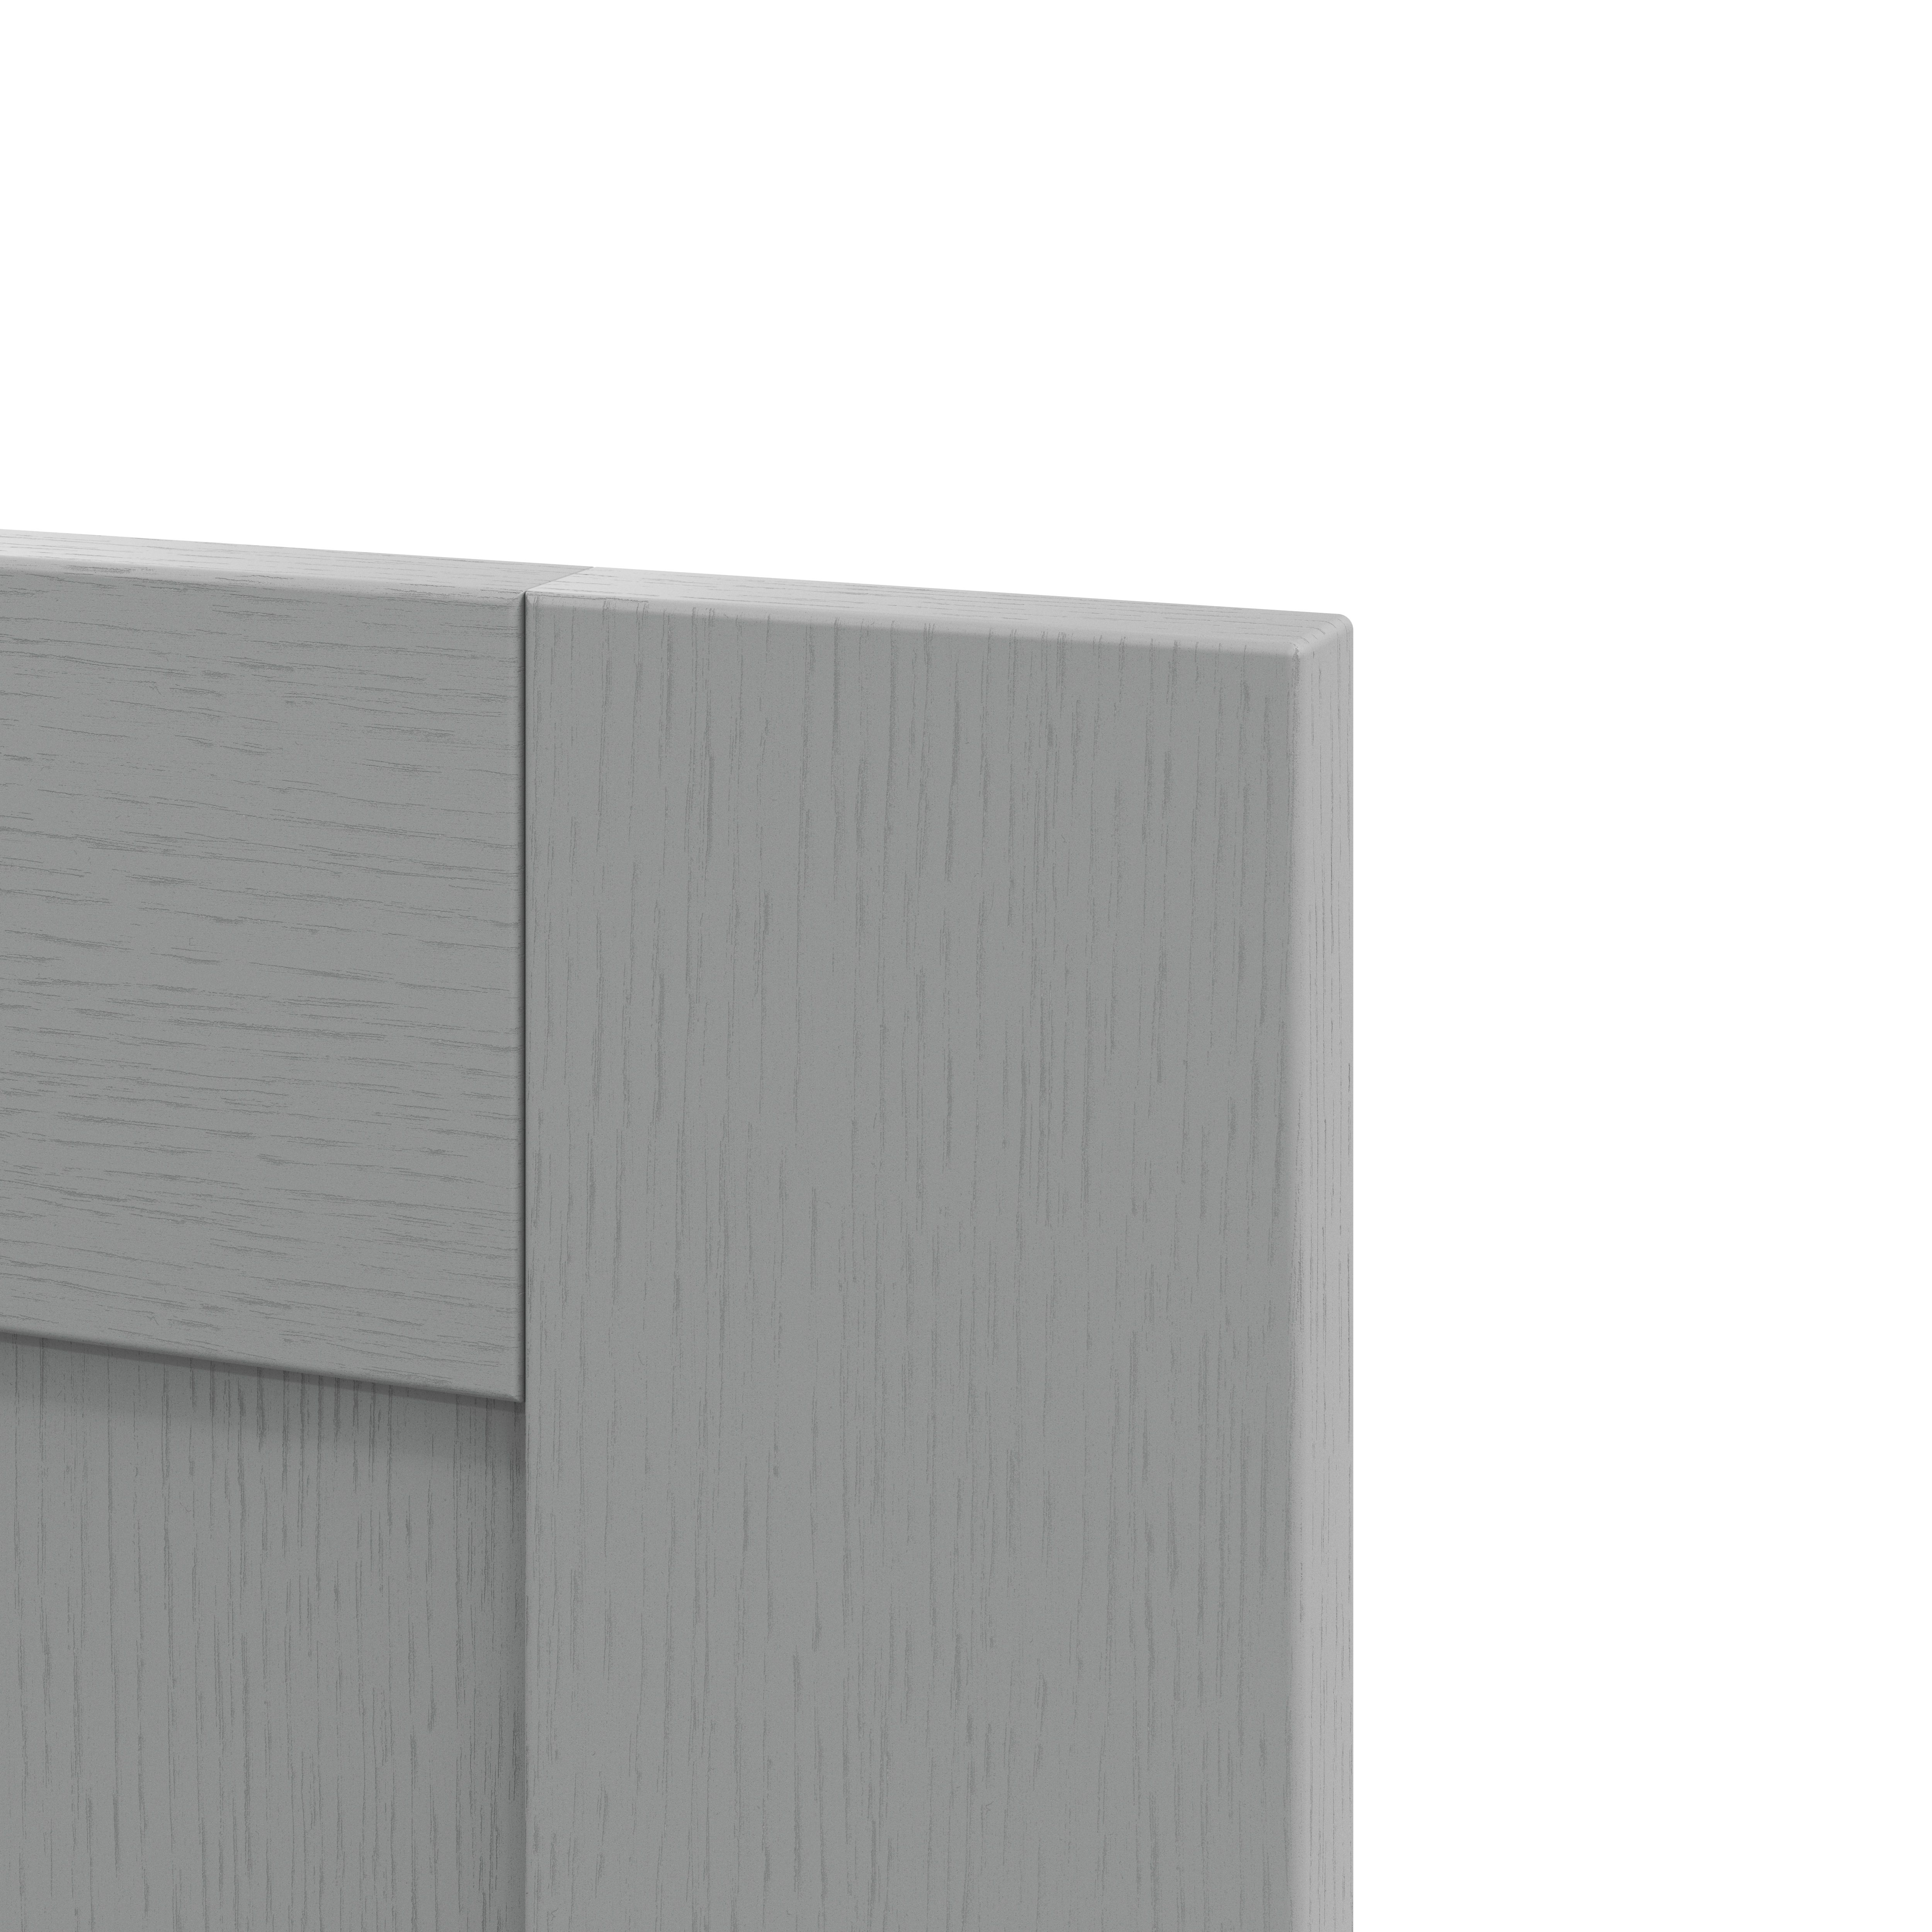 GoodHome Alpinia Matt Slate Grey Painted Wood Effect Shaker Appliance Cabinet door (W)600mm (H)626mm (T)18mm